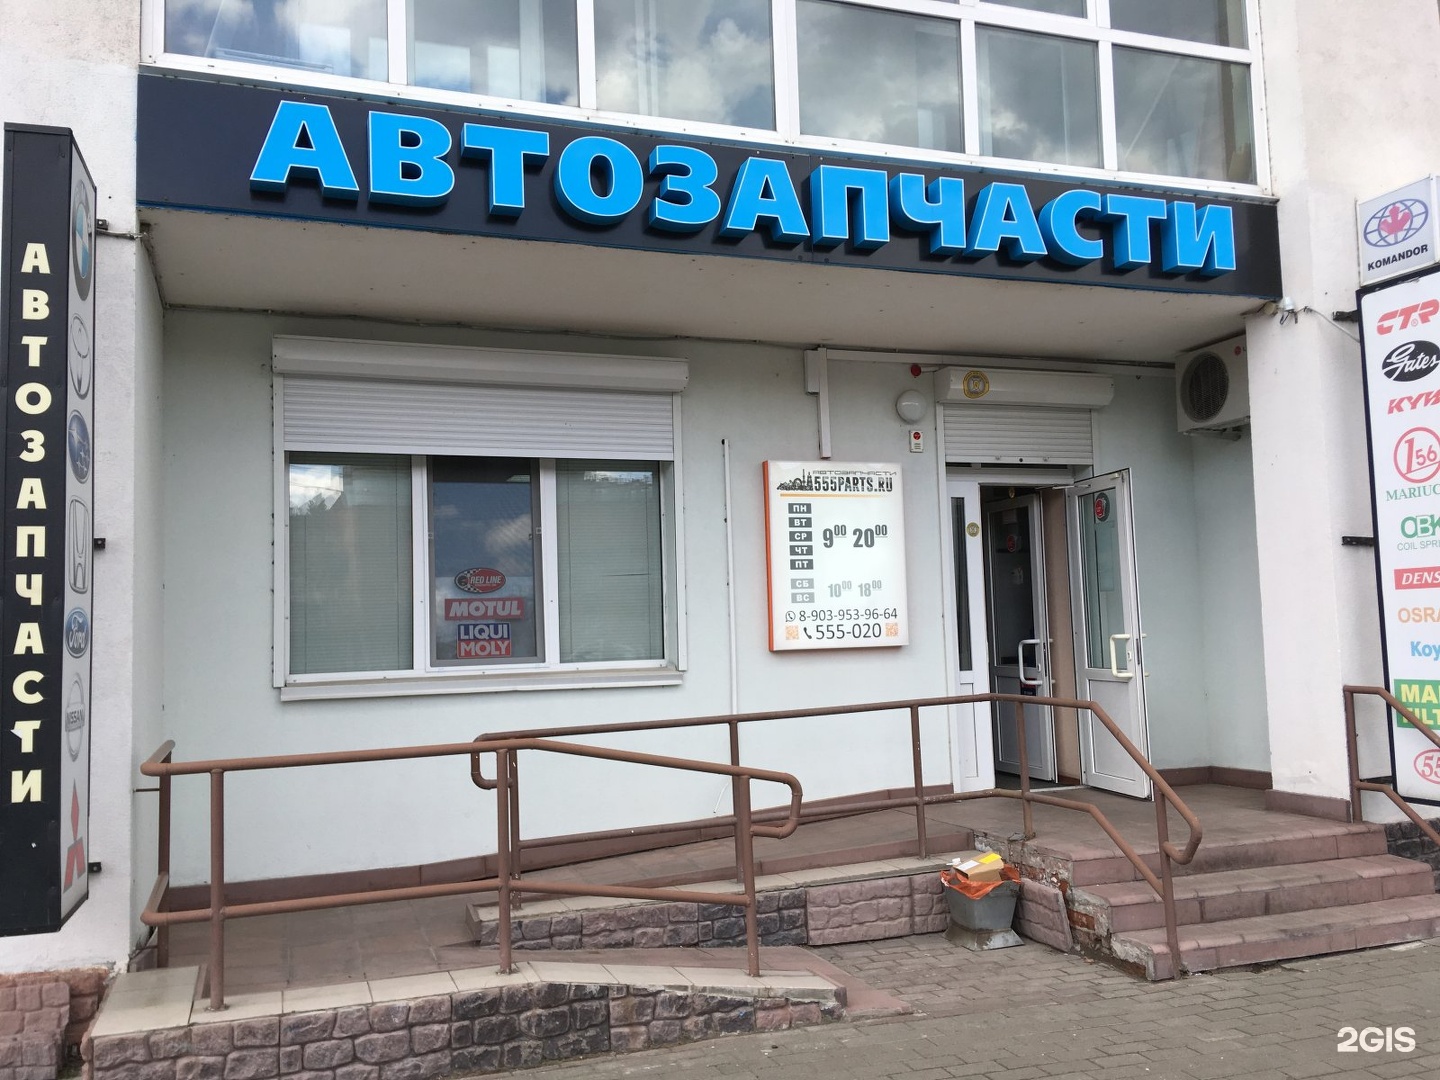 Запчасти Для Иномарок В Томске Интернет Магазин